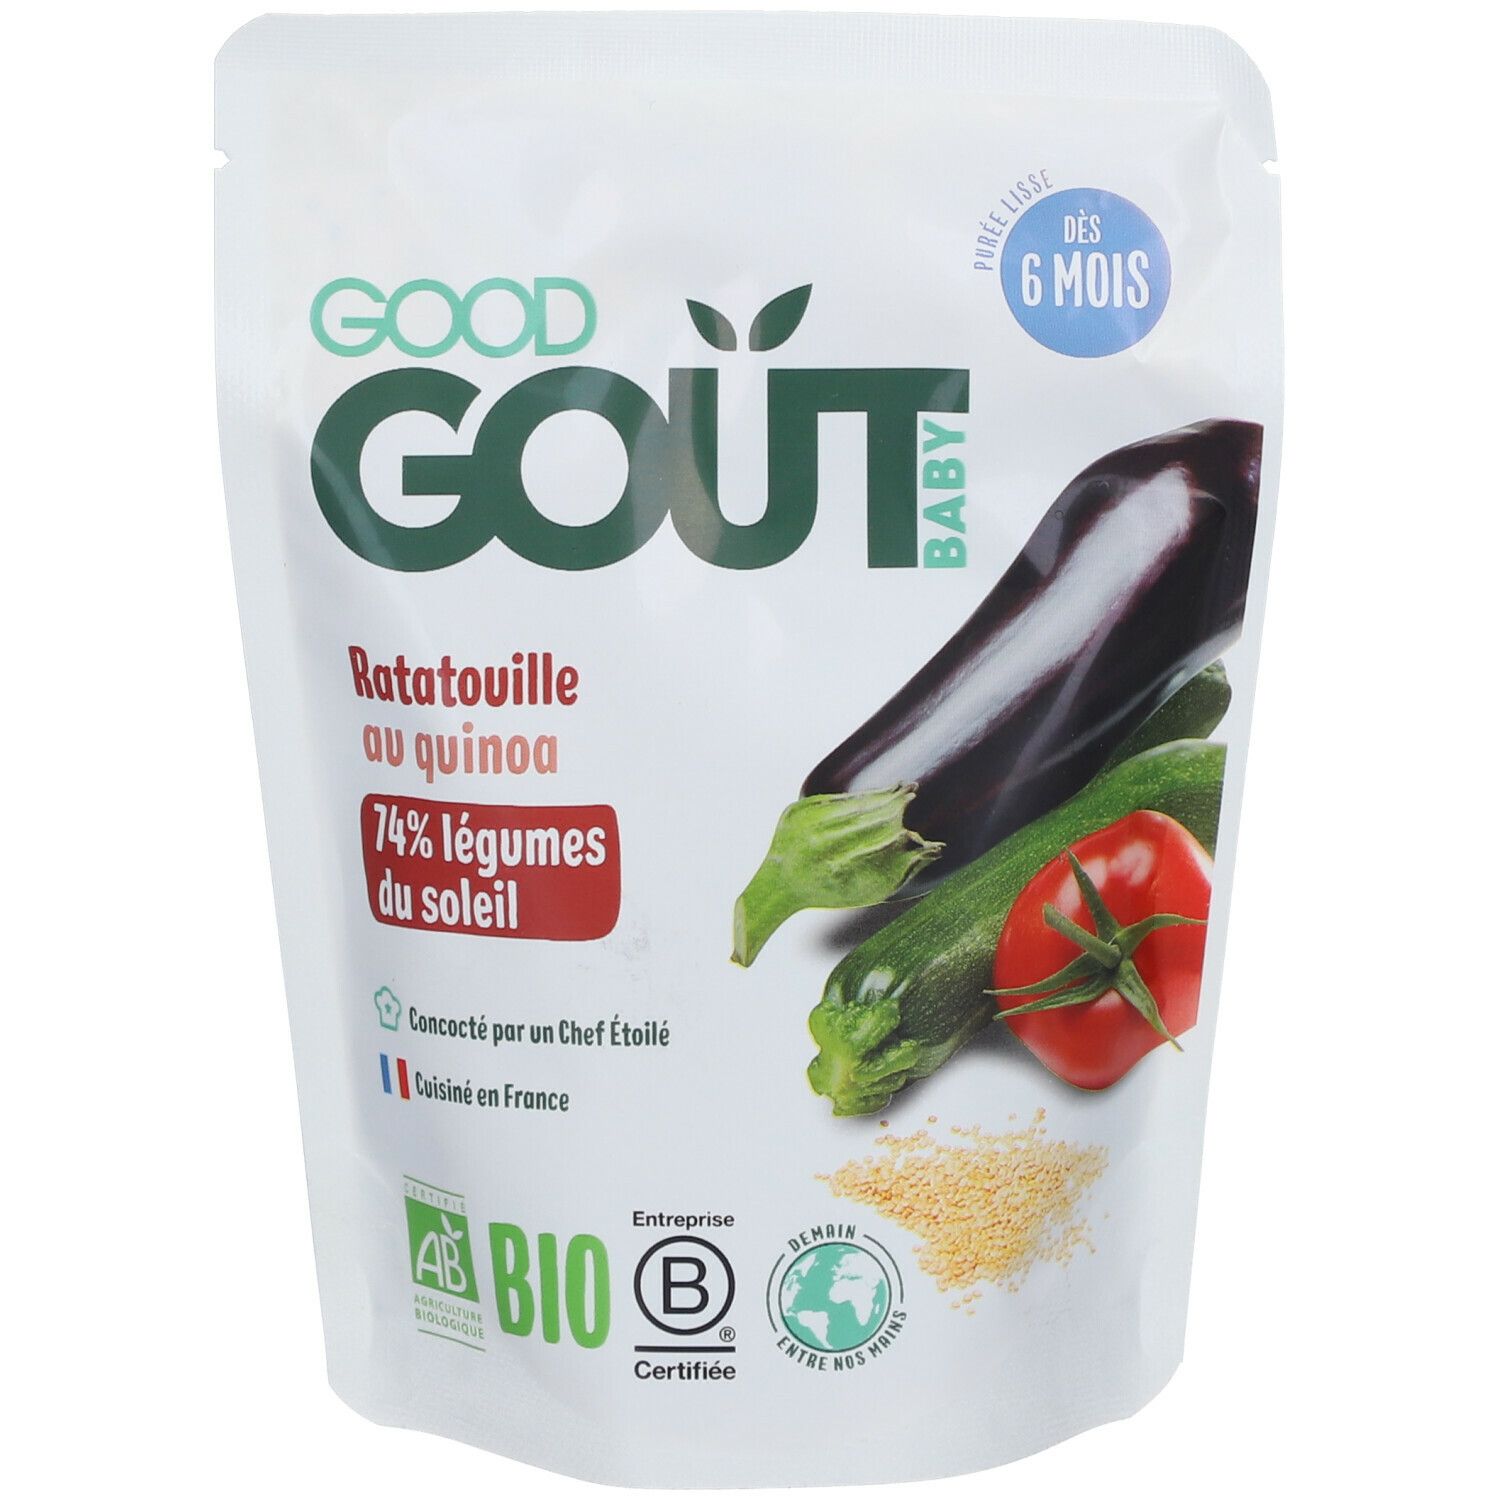 Image of GOOD GOÛT Ratatouille mit Quinoa